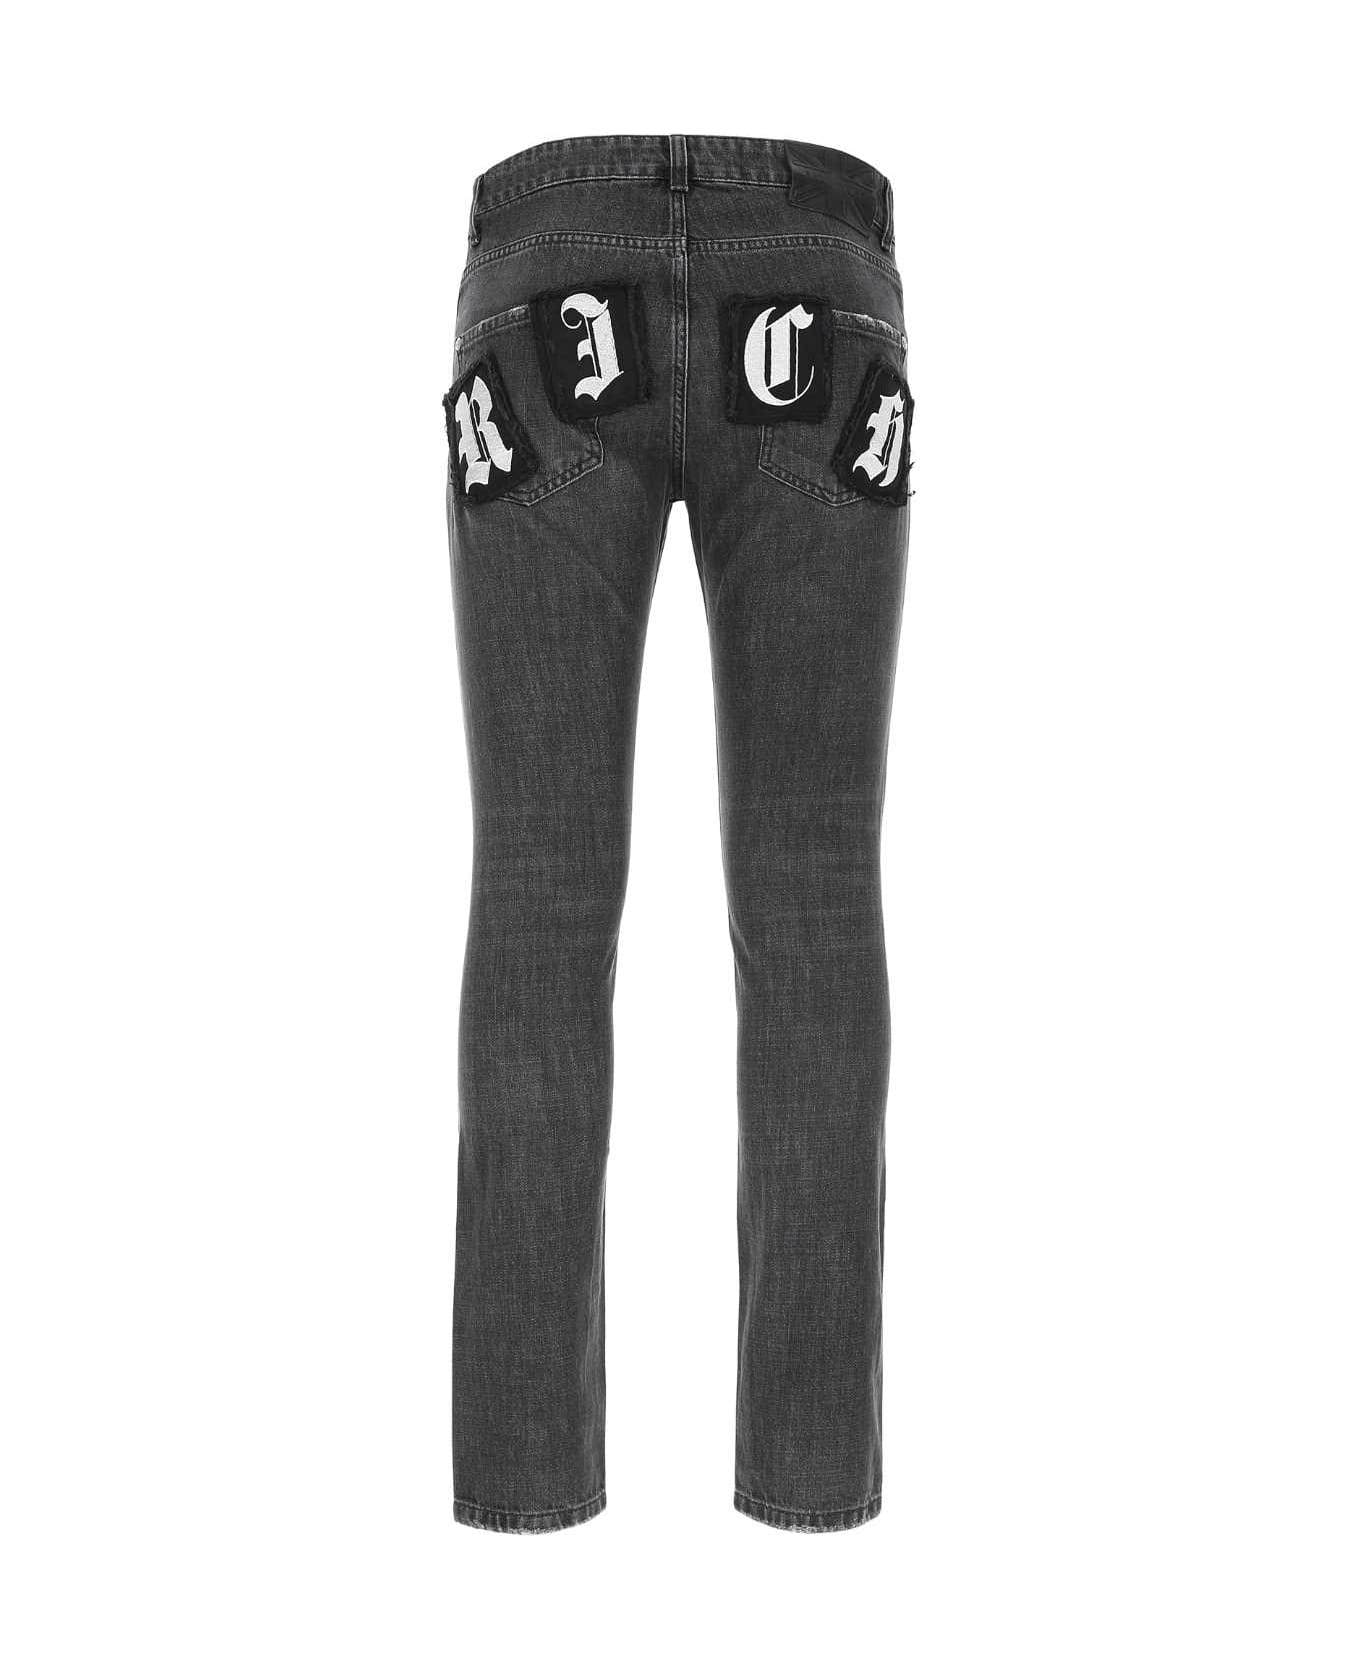 John Richmond Charcoal Grey Denim Jeans - DBLACK